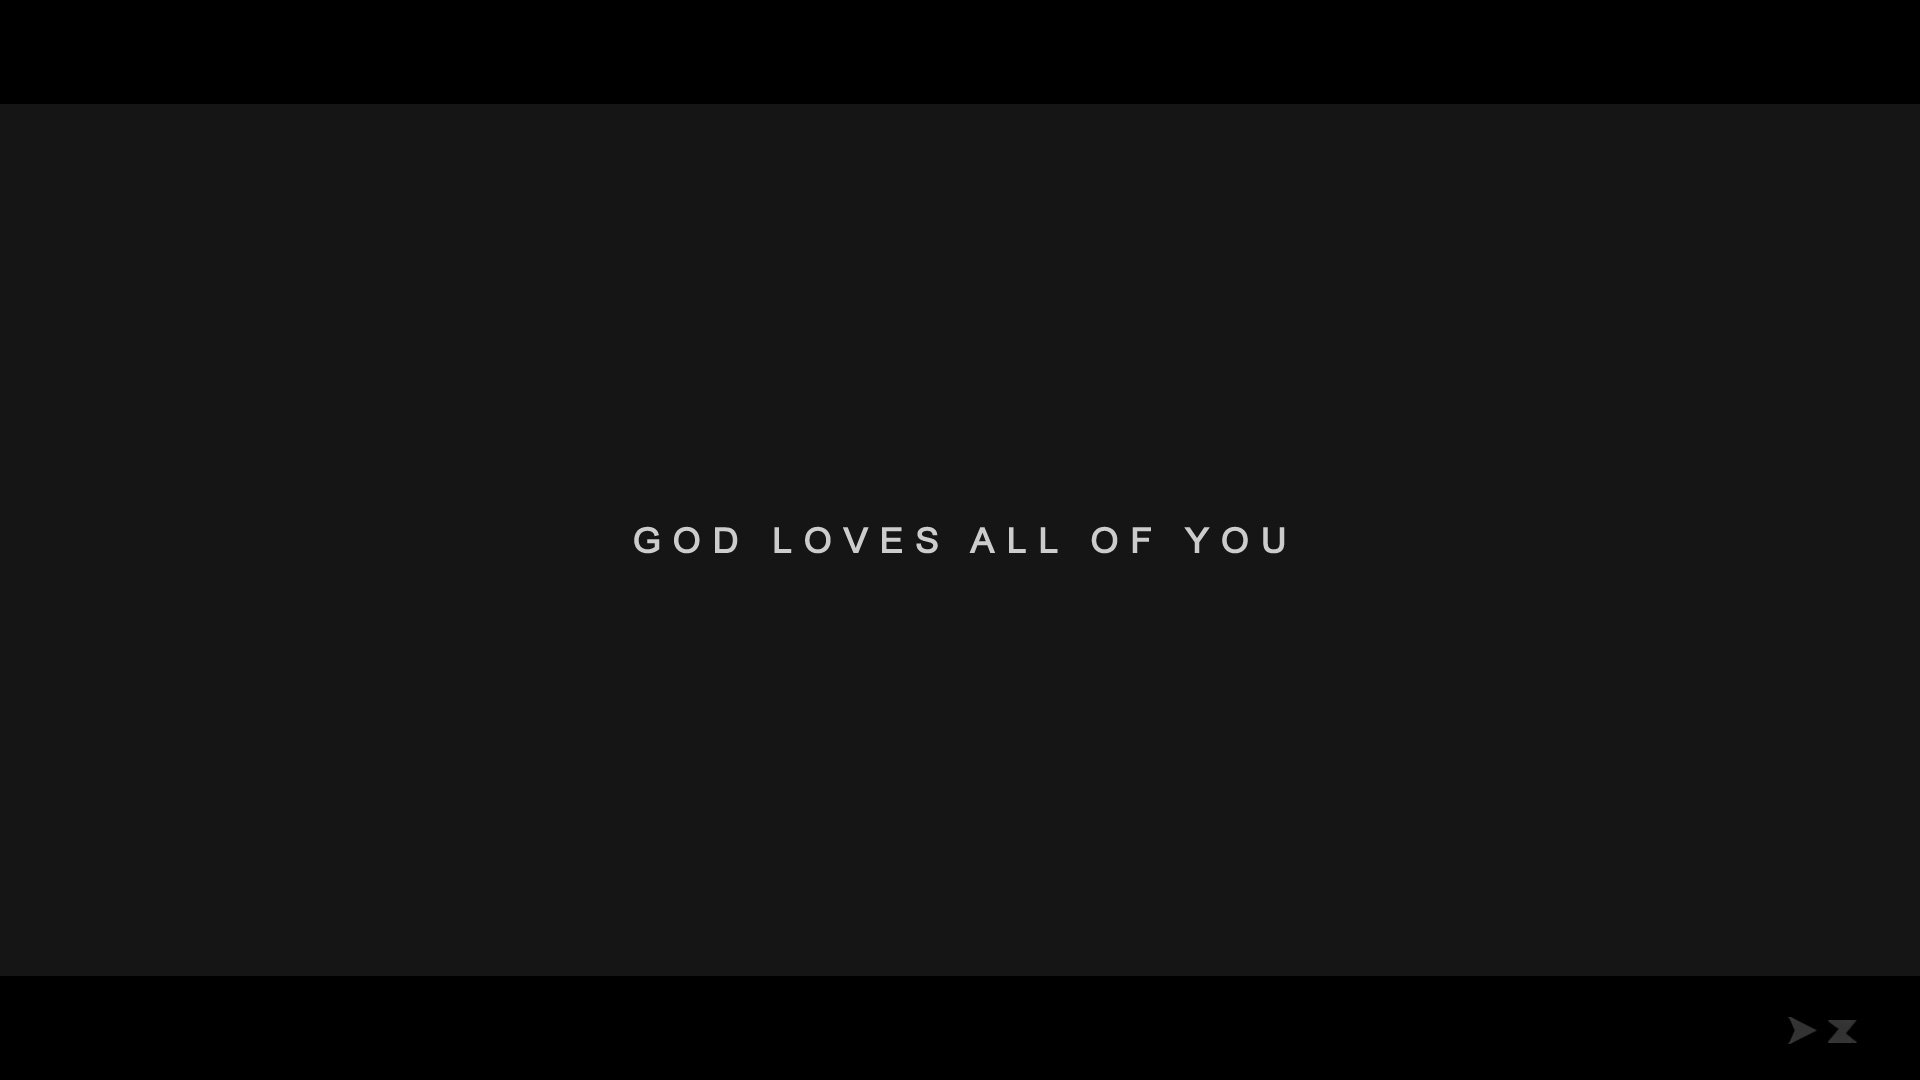 02_God-loves-all-of-you.jpg